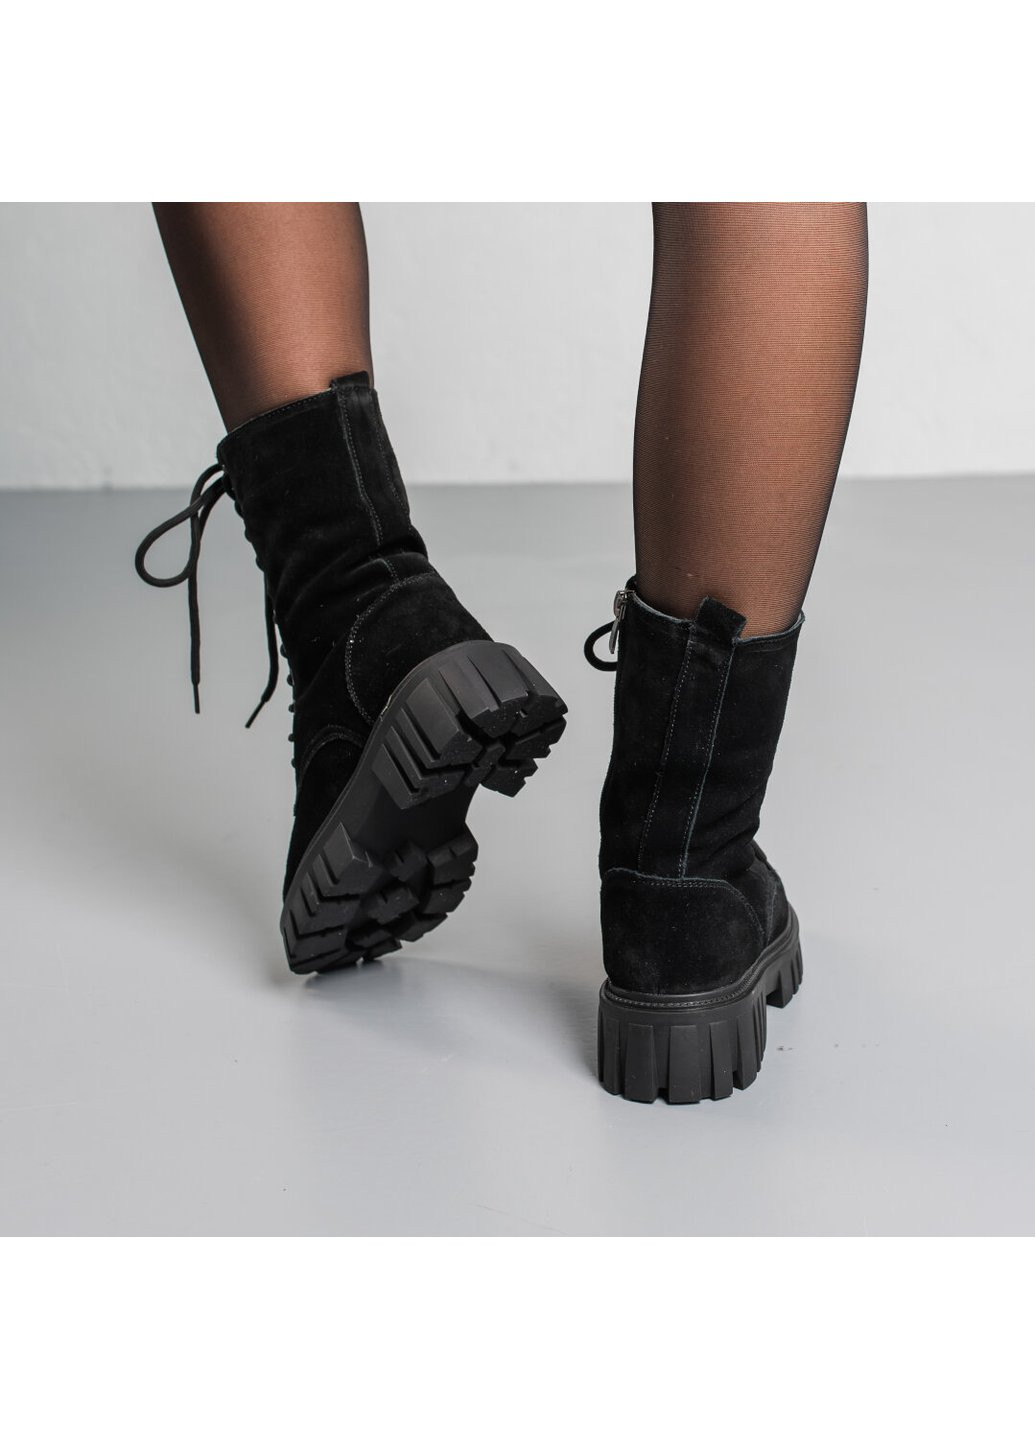 Зимние ботинки женские зимние candy 3813 235 черный Fashion из натуральной замши